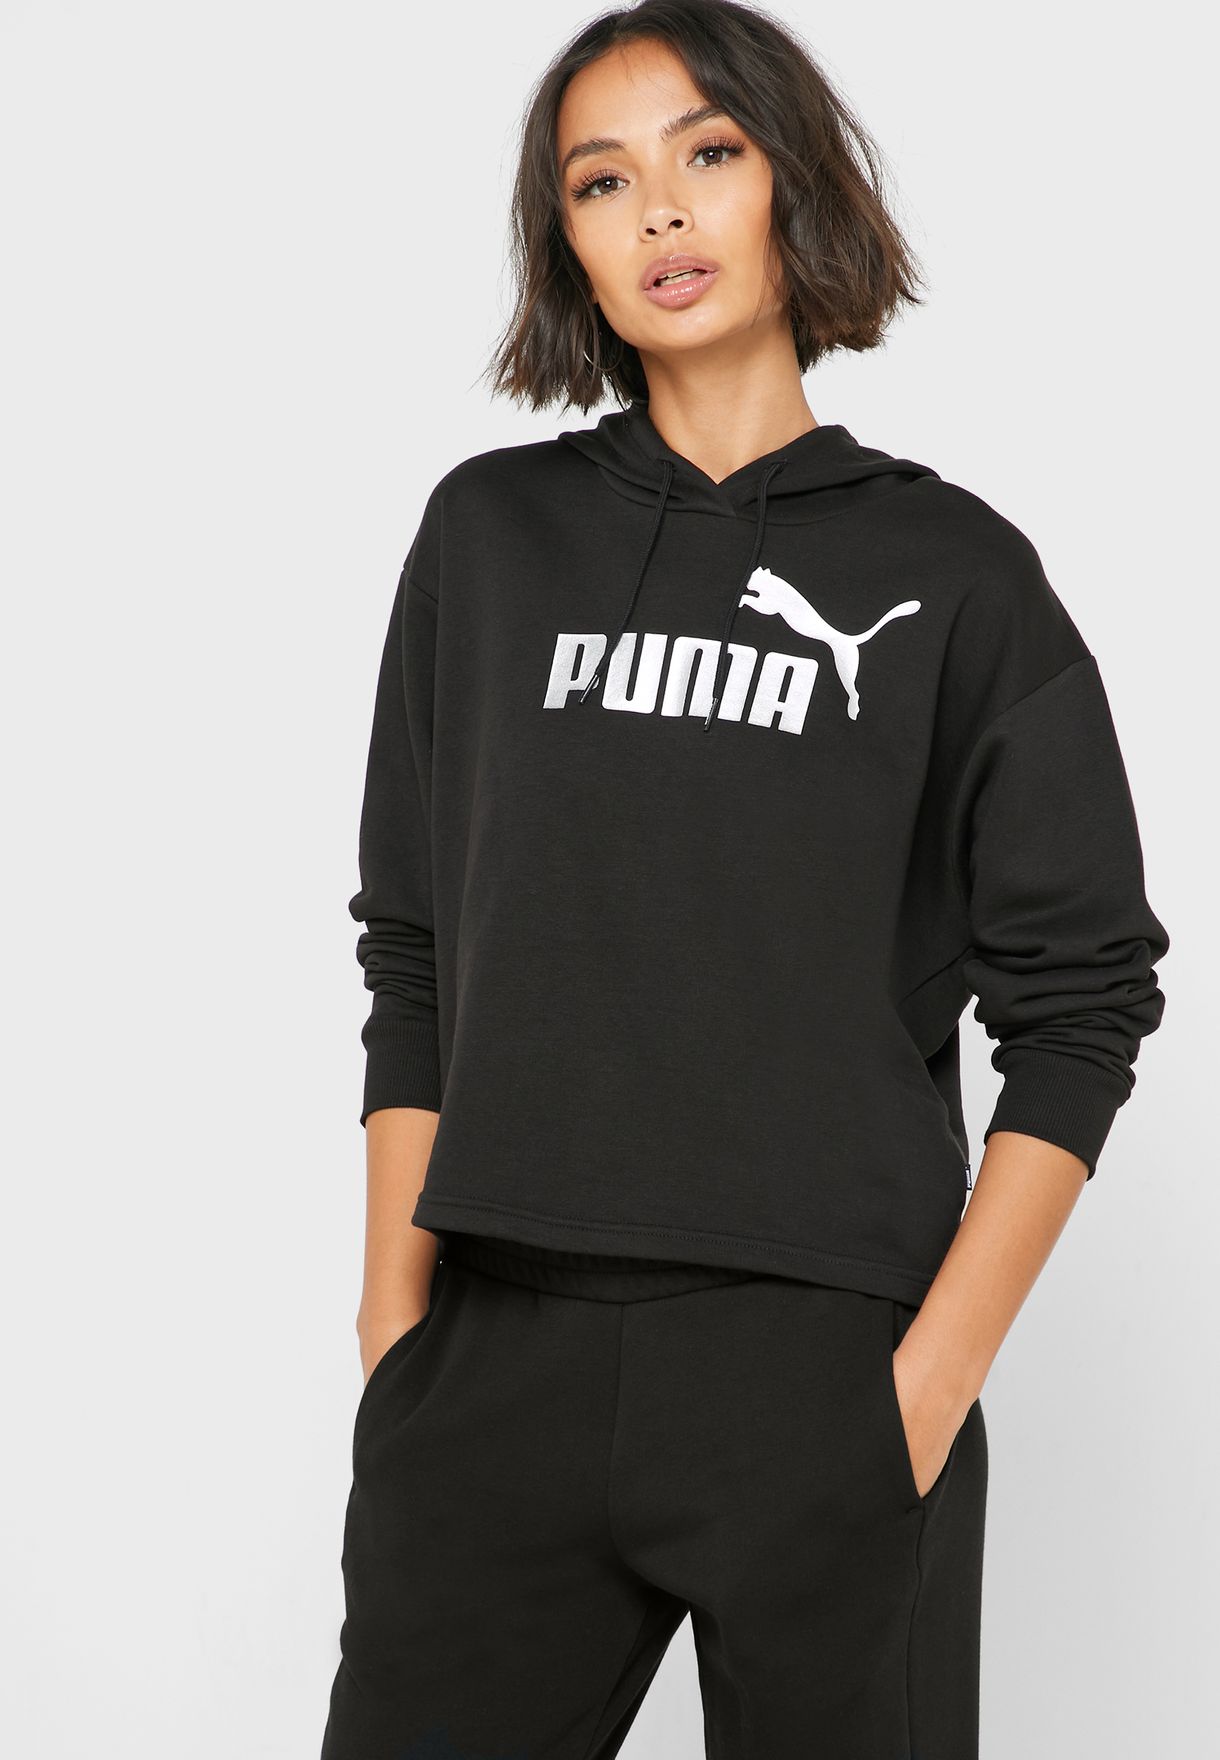 womens puma clothing